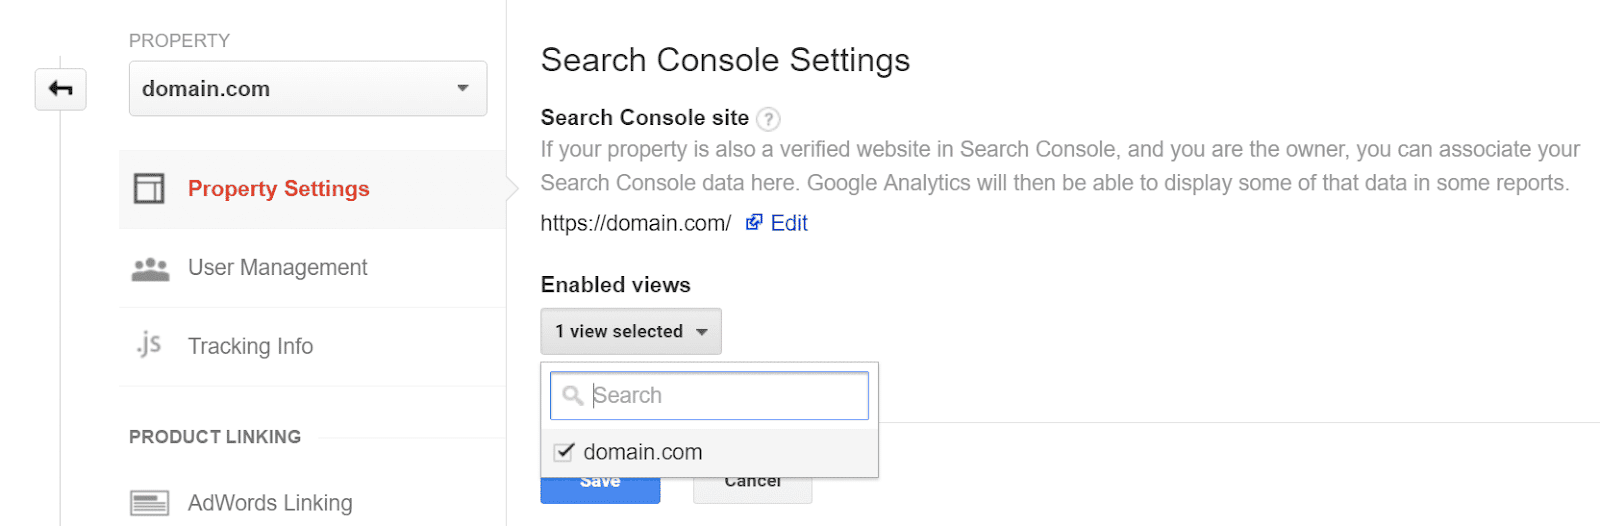 GoogleアナリティクスをGoogle Search Consoleと連携